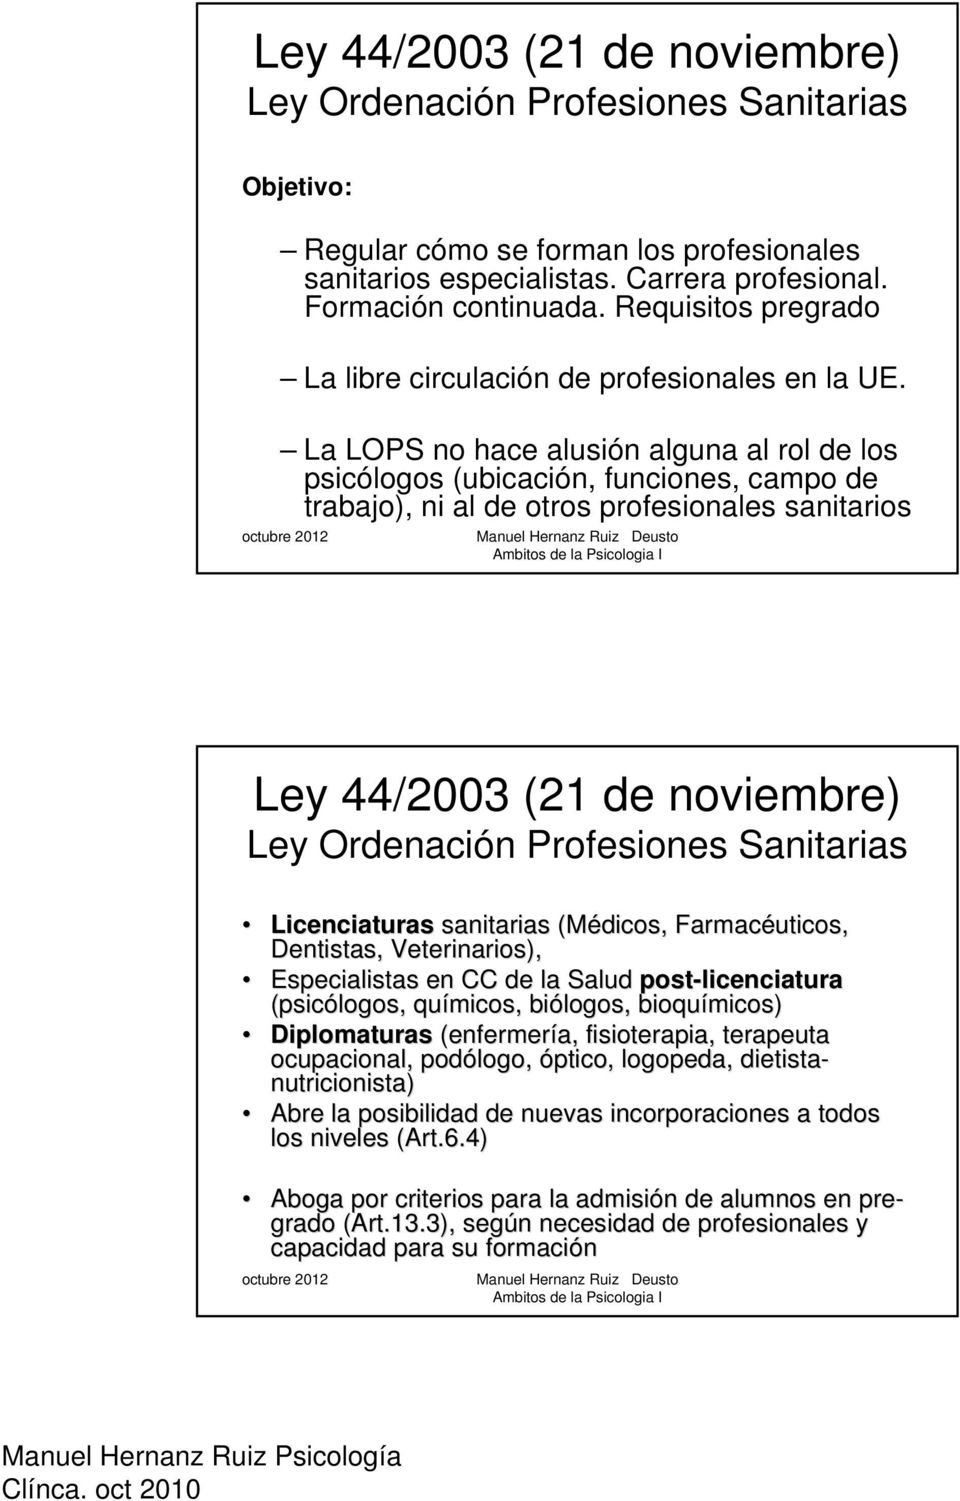 La LOPS no hace alusión alguna al rol de los psicólogos (ubicación, funciones, campo de trabajo), ni al de otros profesionales sanitarios Ley 44/2003 (21 de noviembre) Ley Ordenación Profesiones